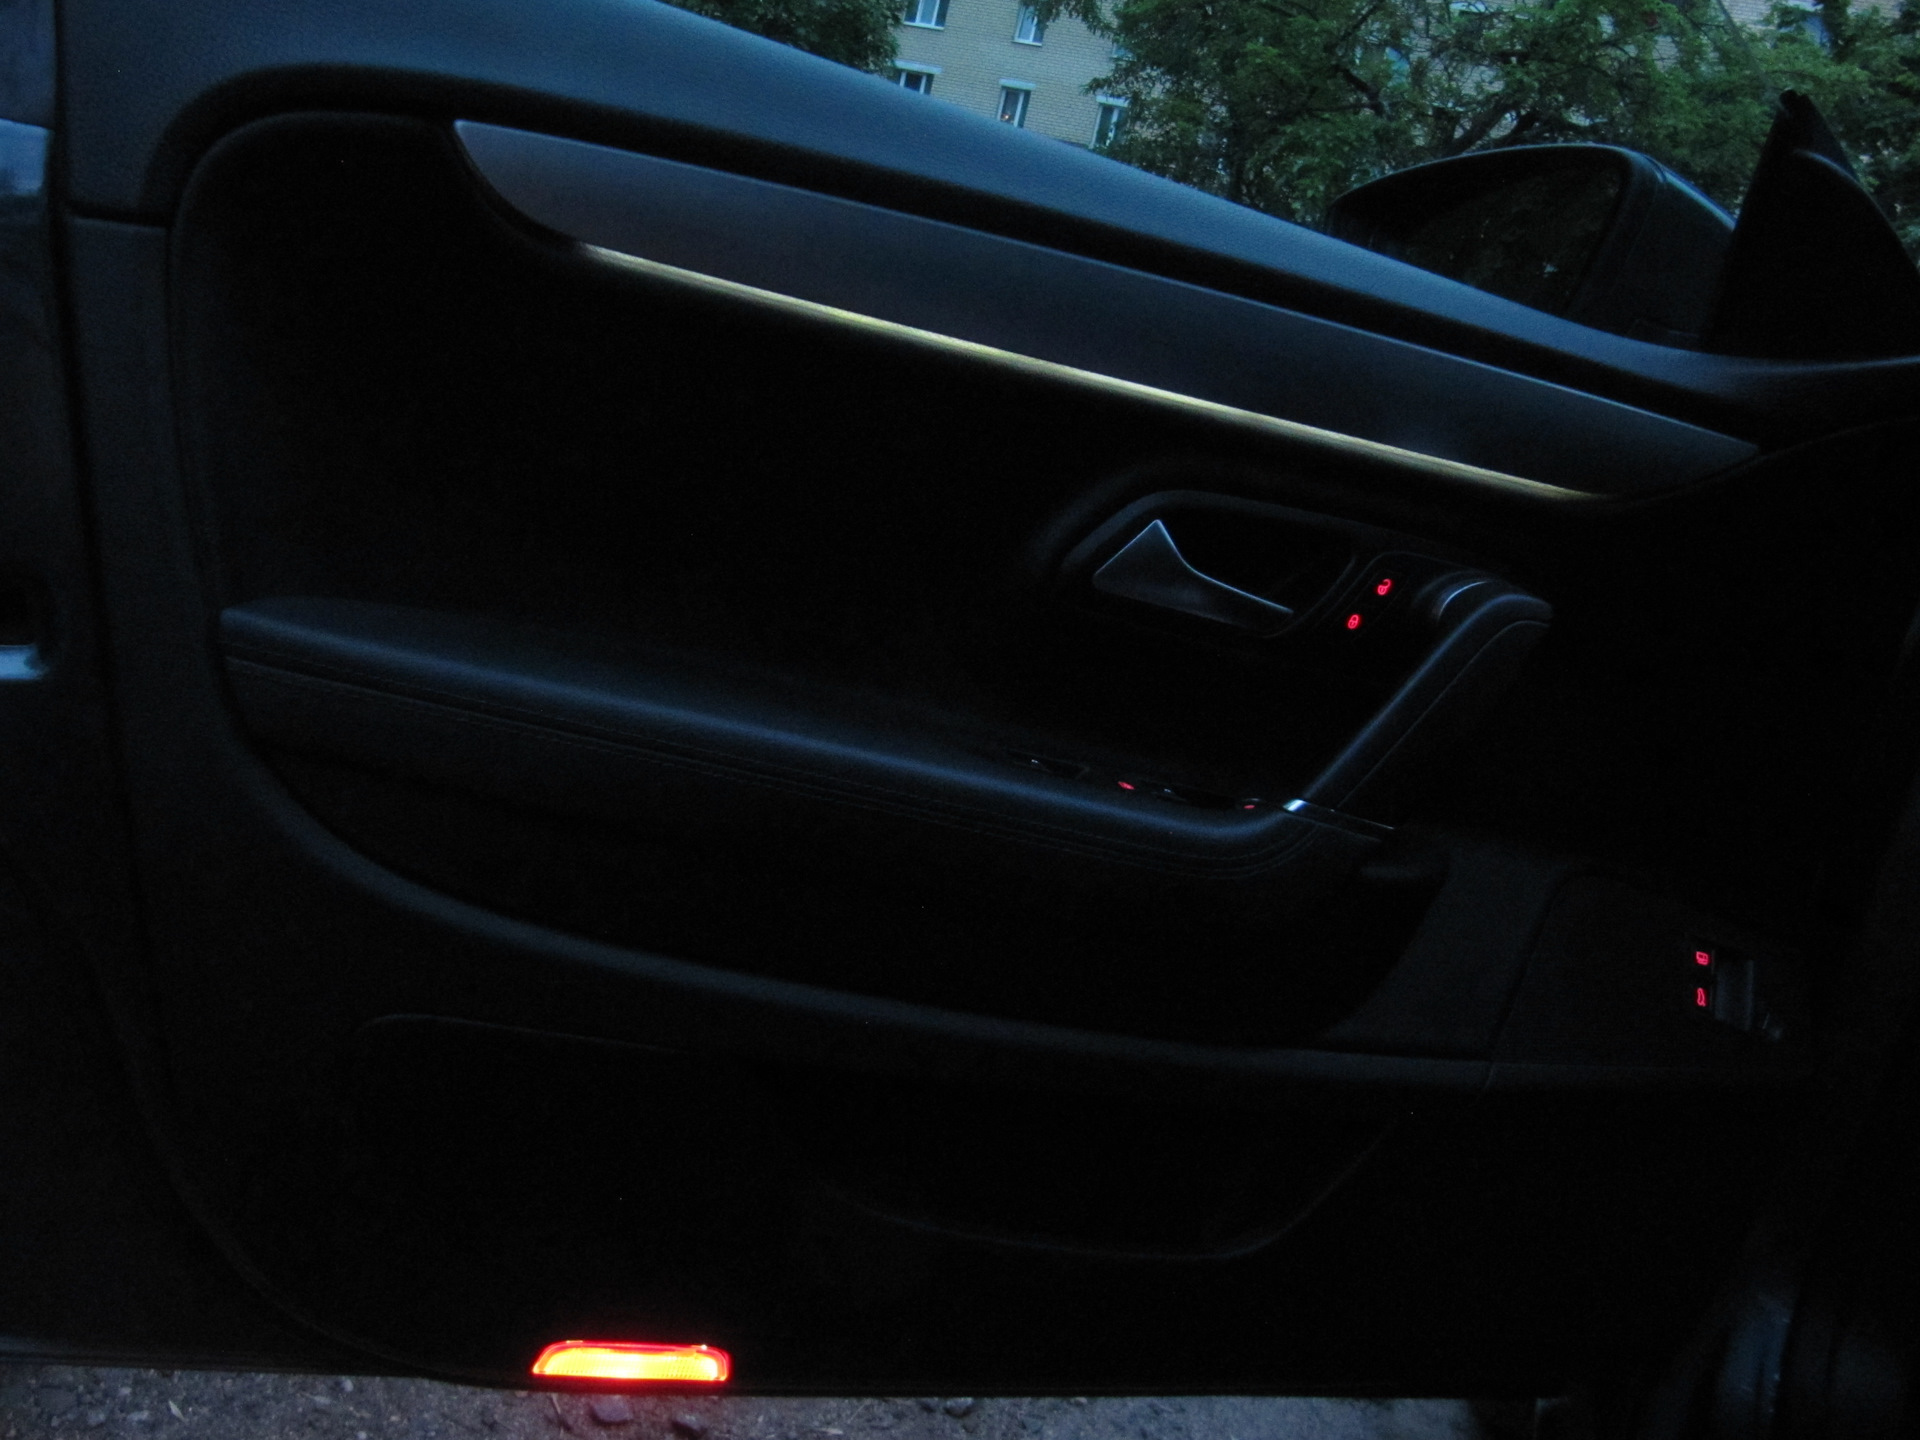 Подсветка двери автомобиля с логотипом